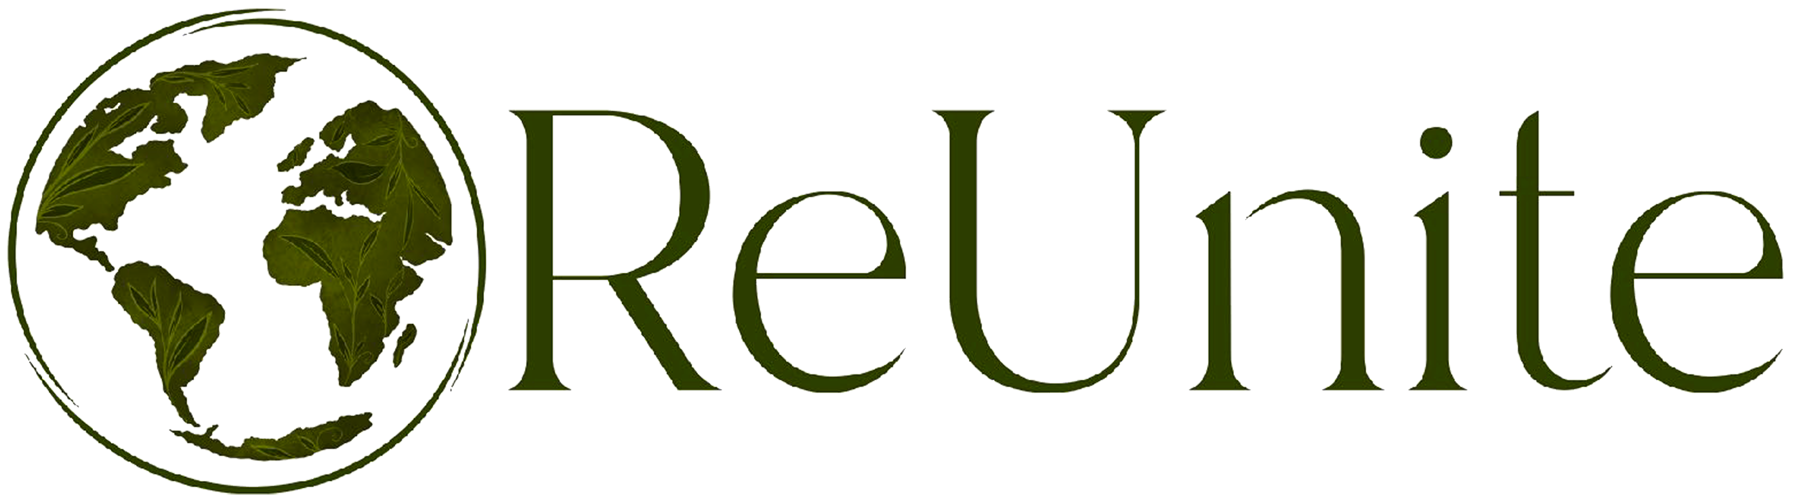 ReUnite Logo